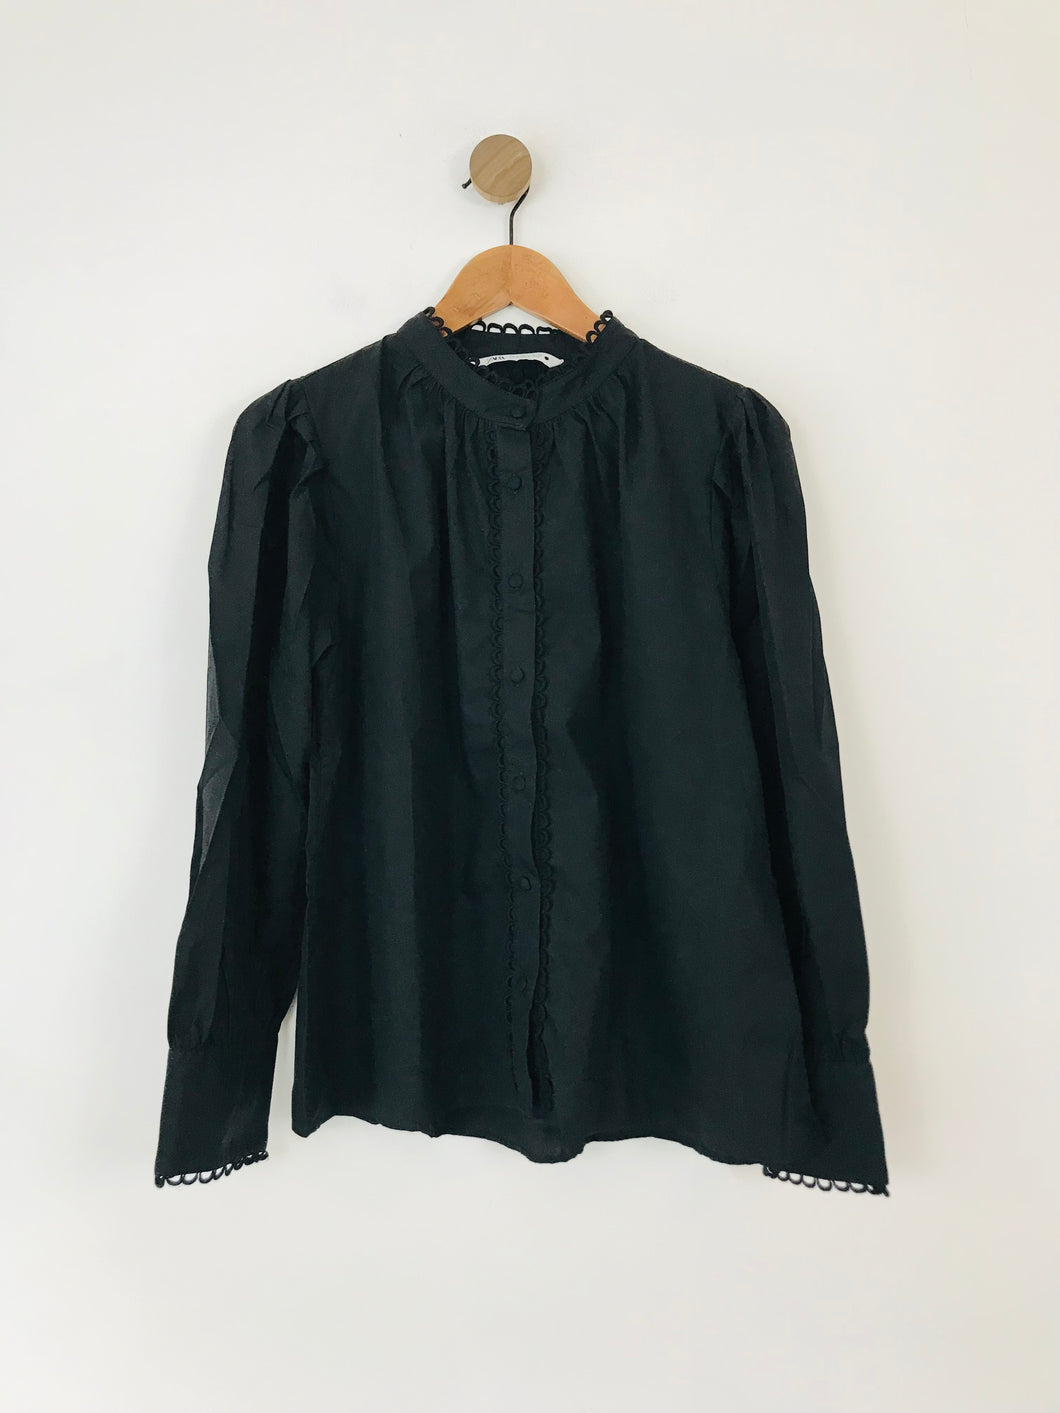 Zara Women's Collarless Button-Up Shirt | XL UK16 | Black